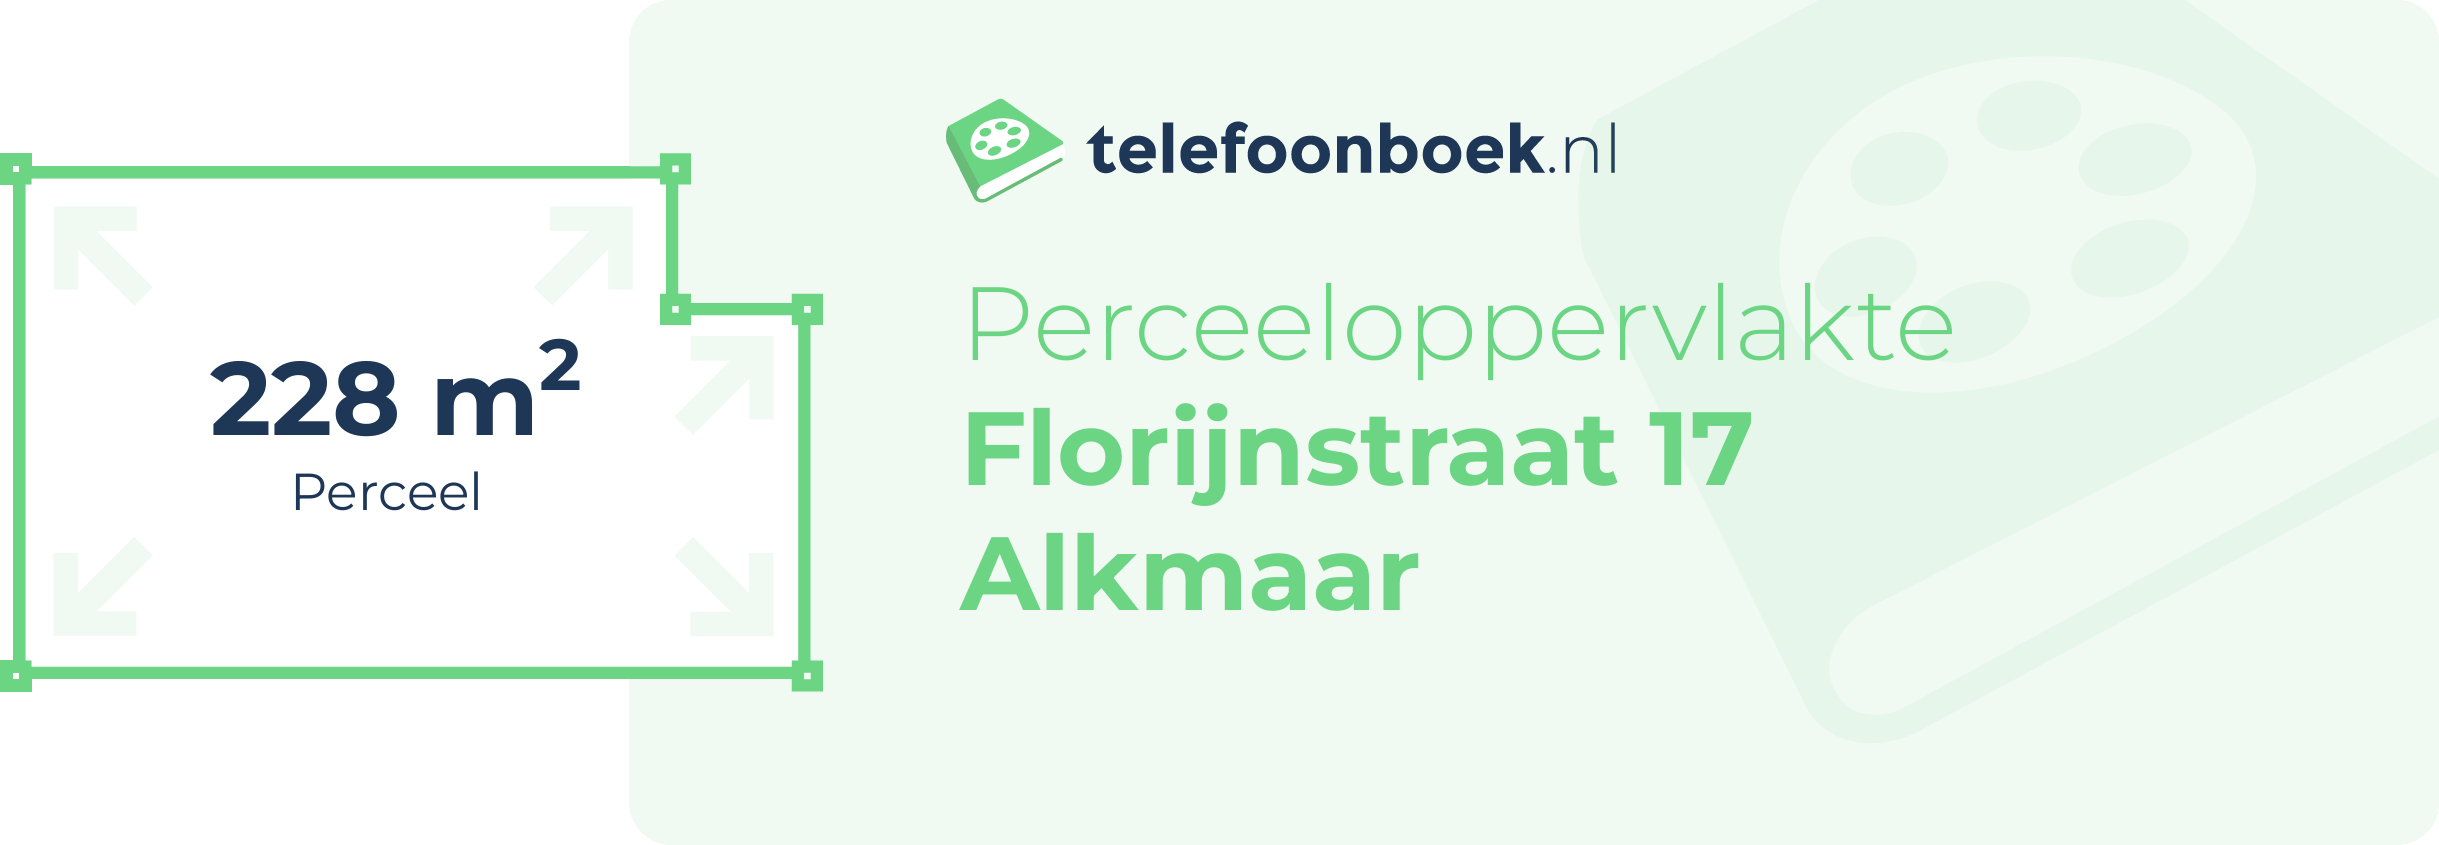 Perceeloppervlakte Florijnstraat 17 Alkmaar